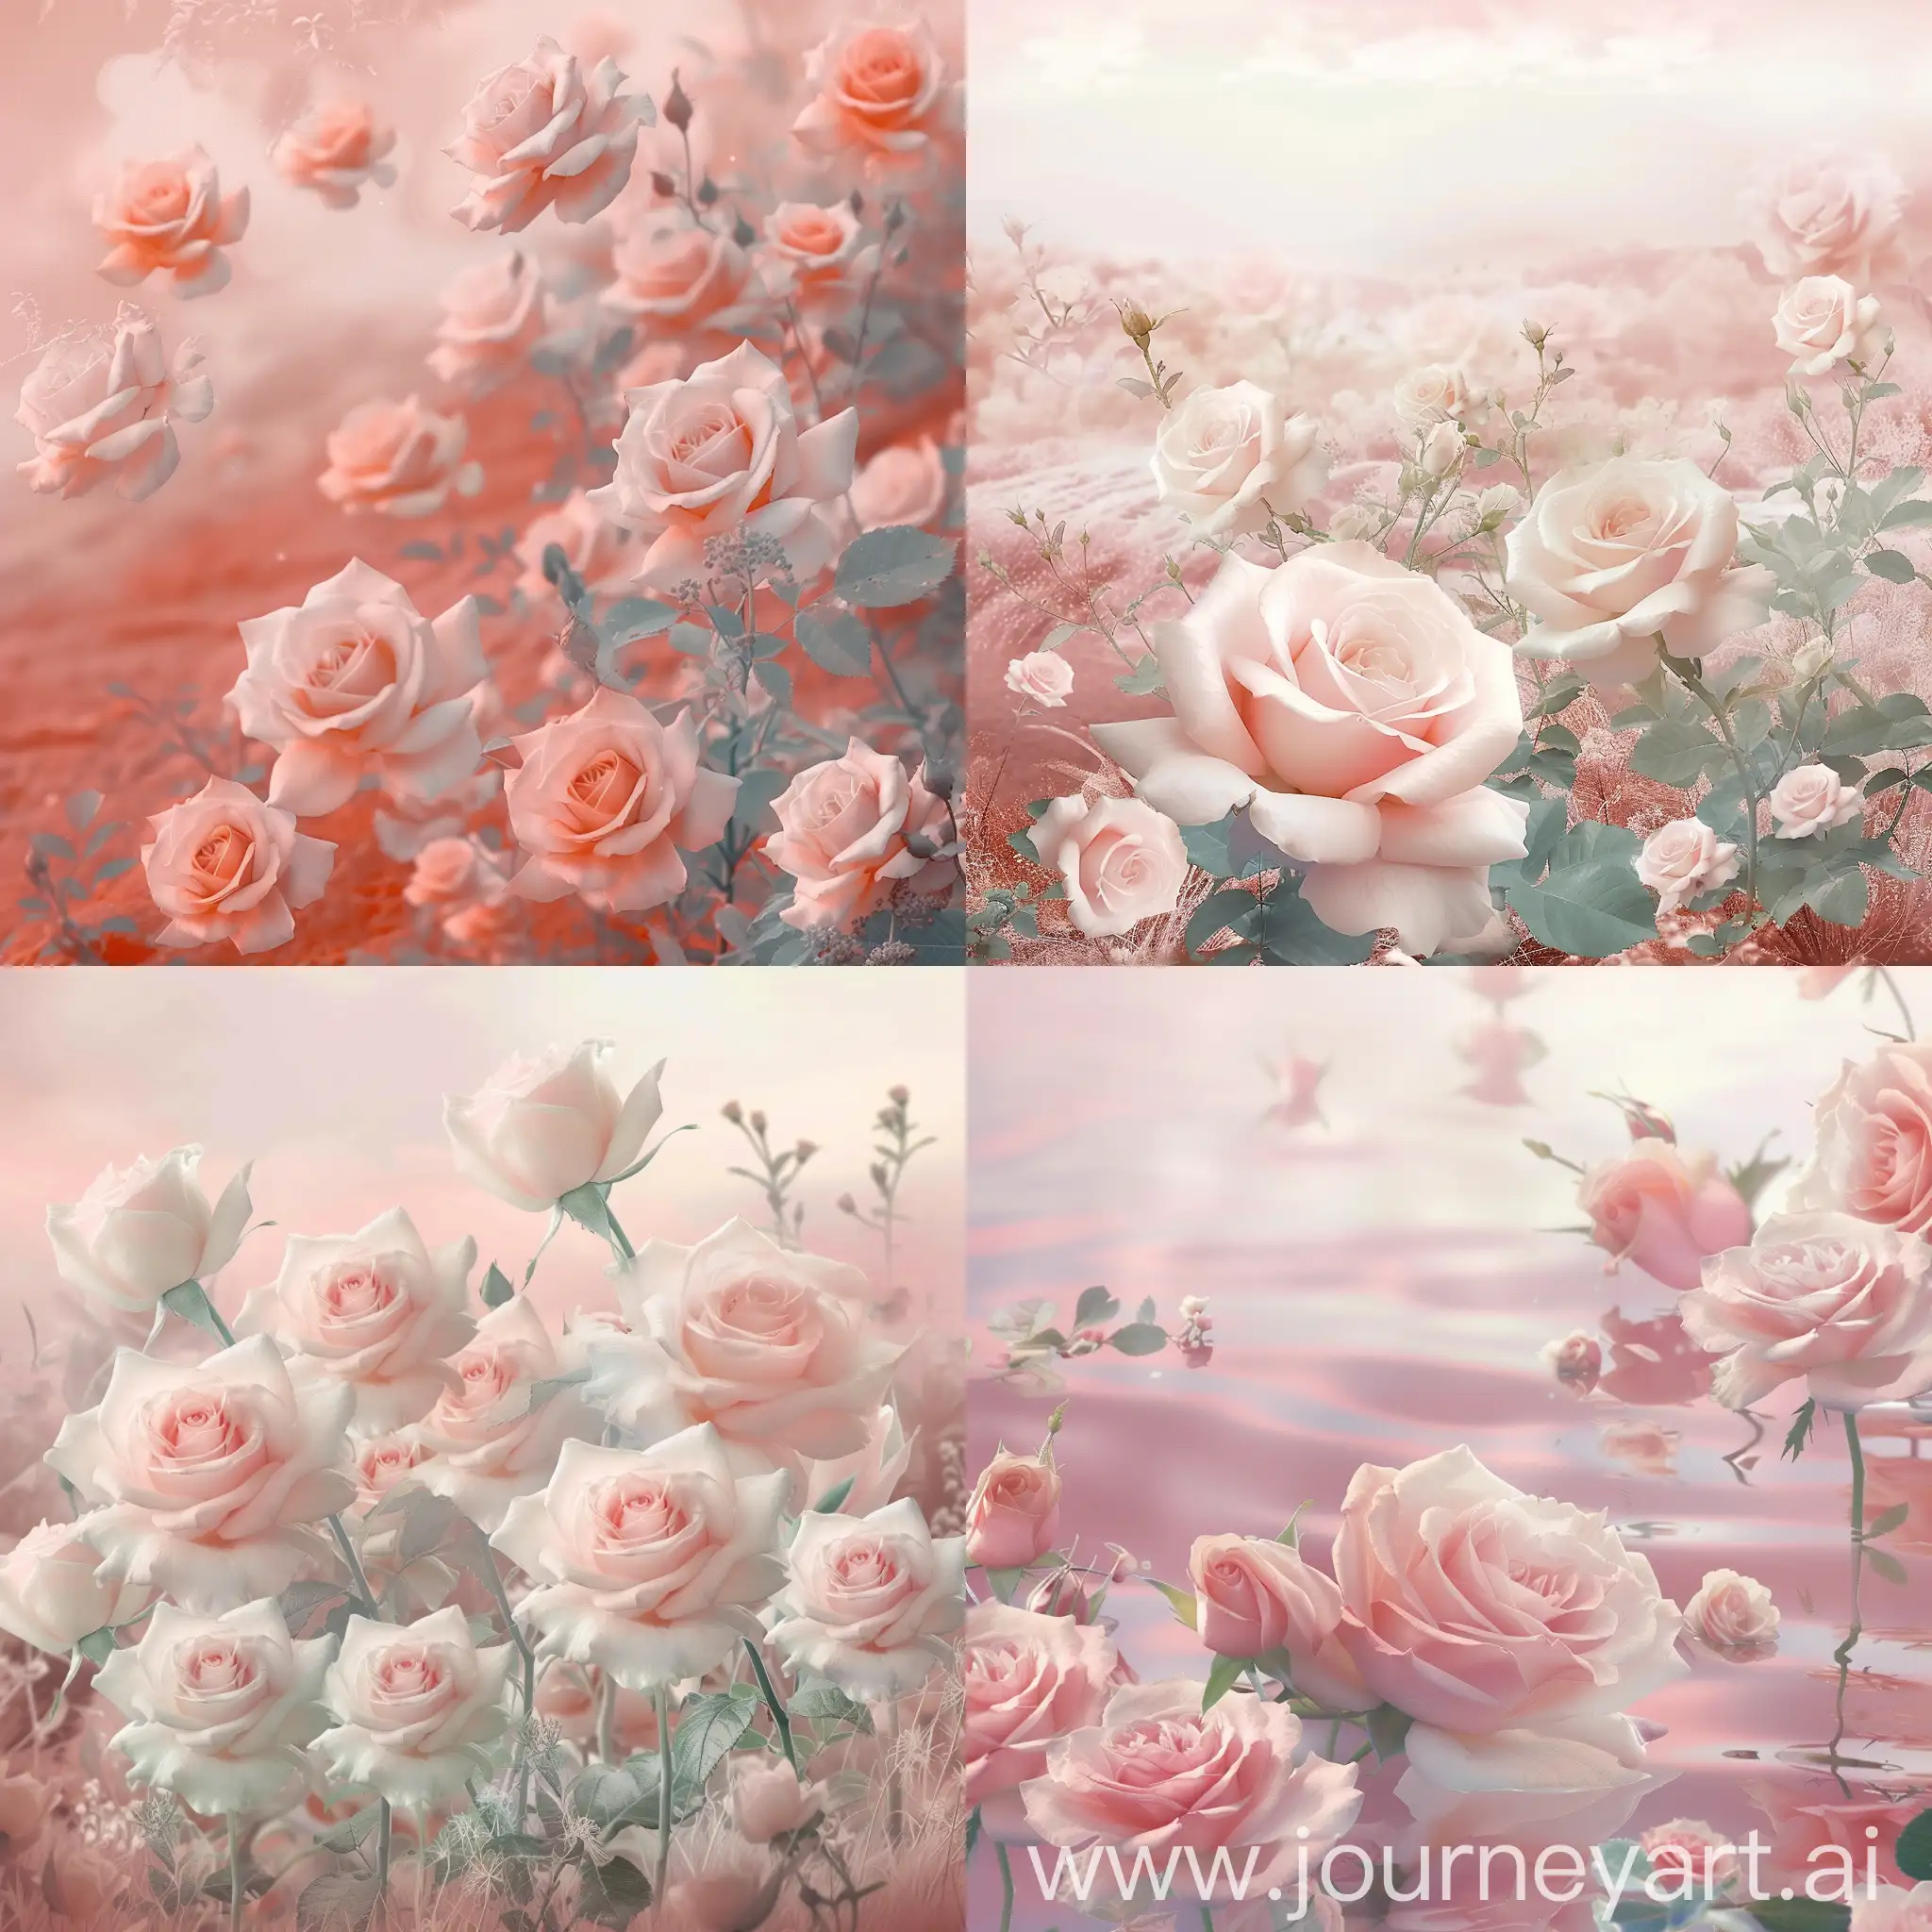 Enchanting-Pastel-Pink-Roses-in-Serene-Digital-Landscape